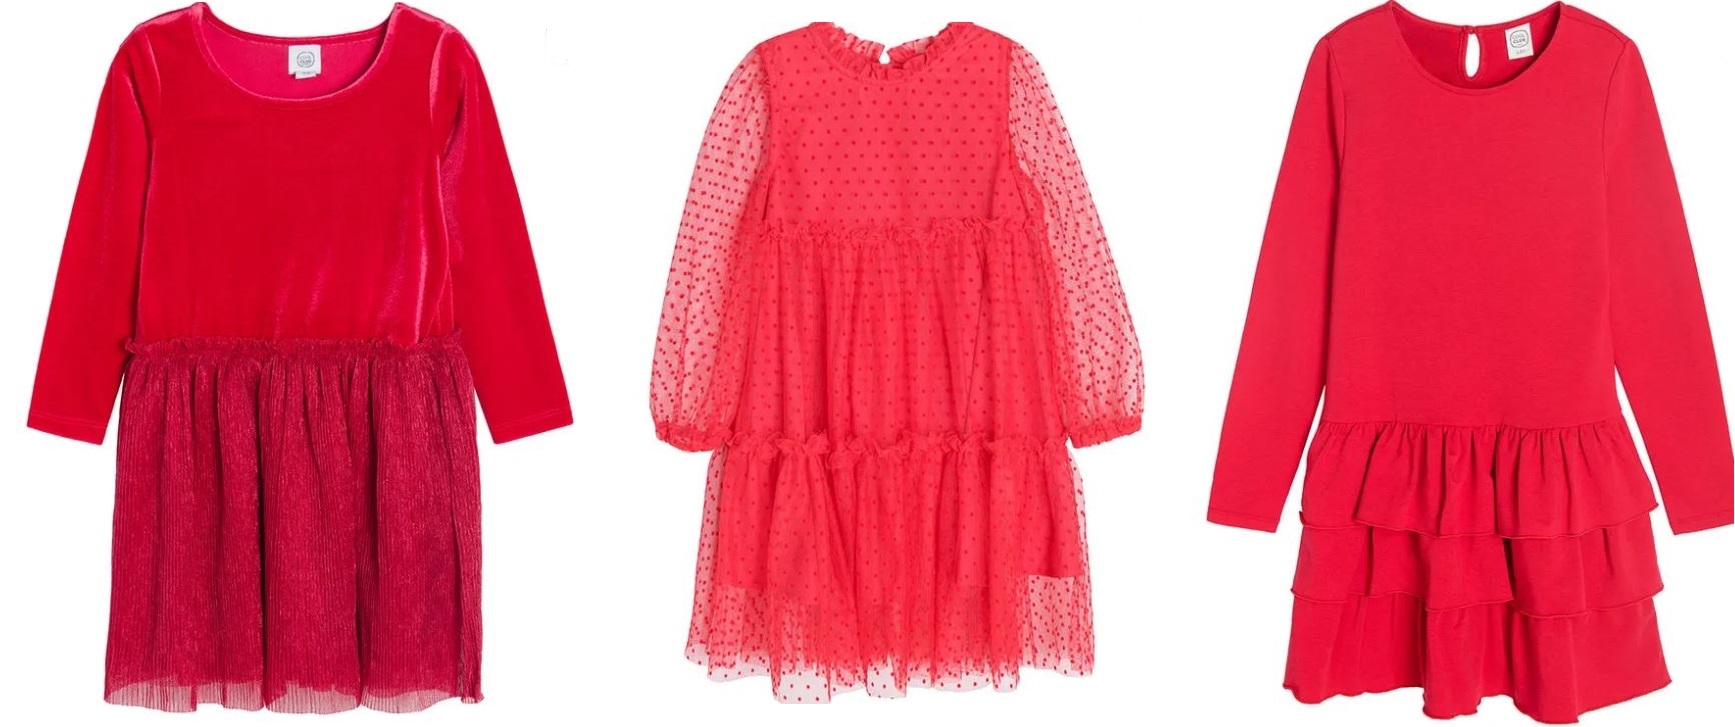 czerwone sukienki świąteczne dla dziewczynki SMYK eleganckie dla 5 latki 10 latki